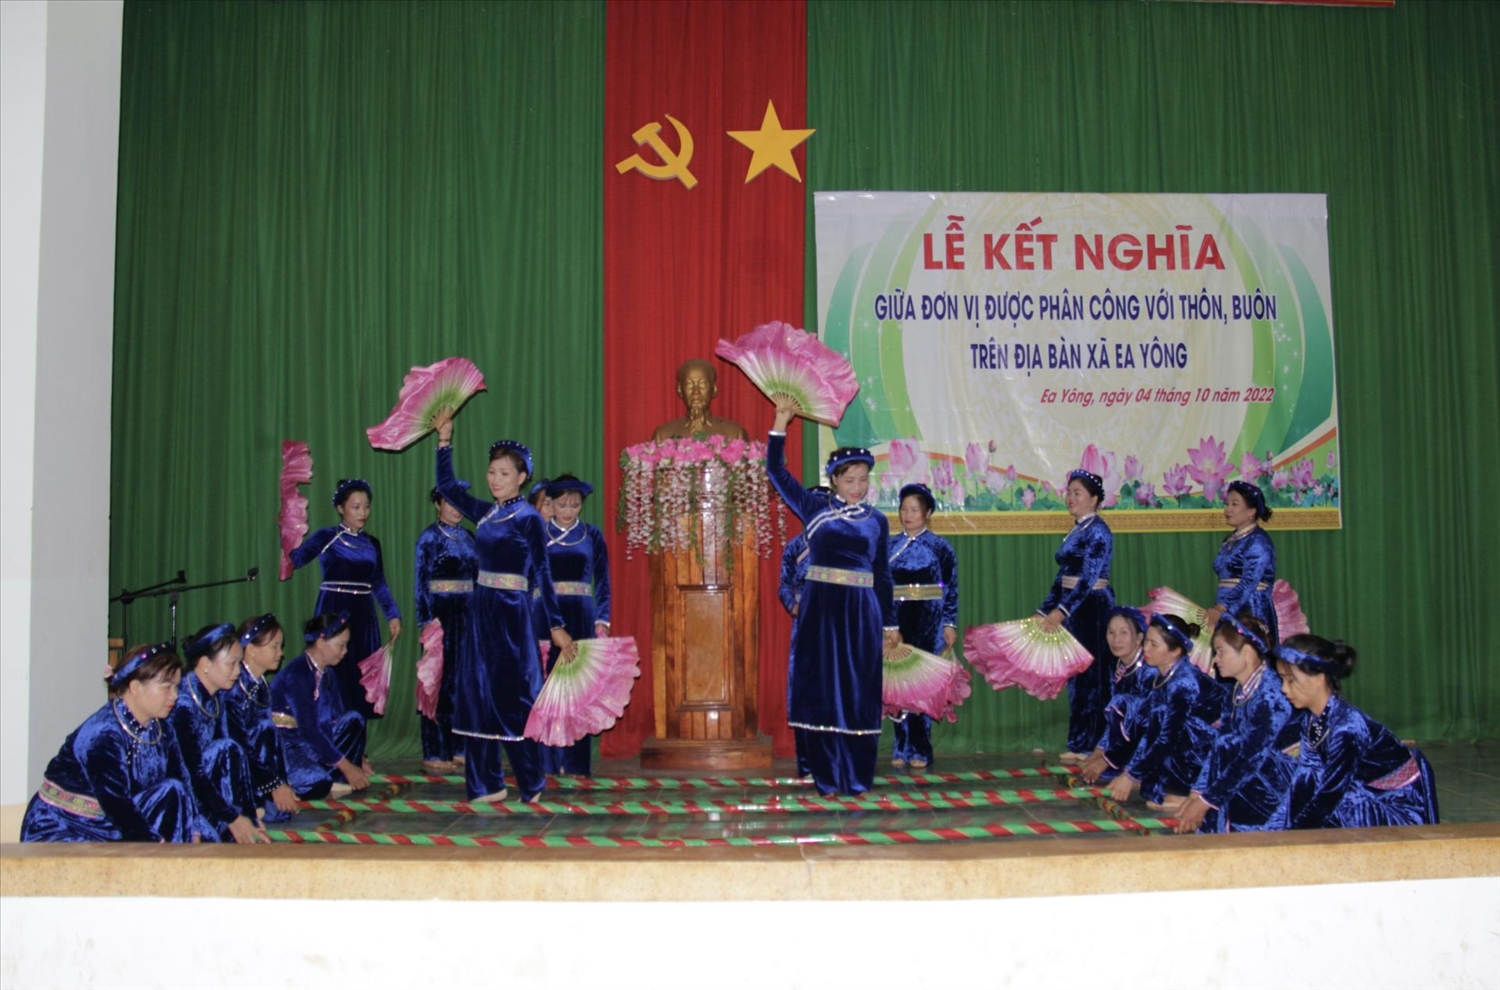 Tiết mục biểu diễn múa sạp của bà con dân tộc Tày, Nùng thôn Thạch Lũ trong lễ kết nghĩa xã Ea Yông (huyện Krông Pắc)